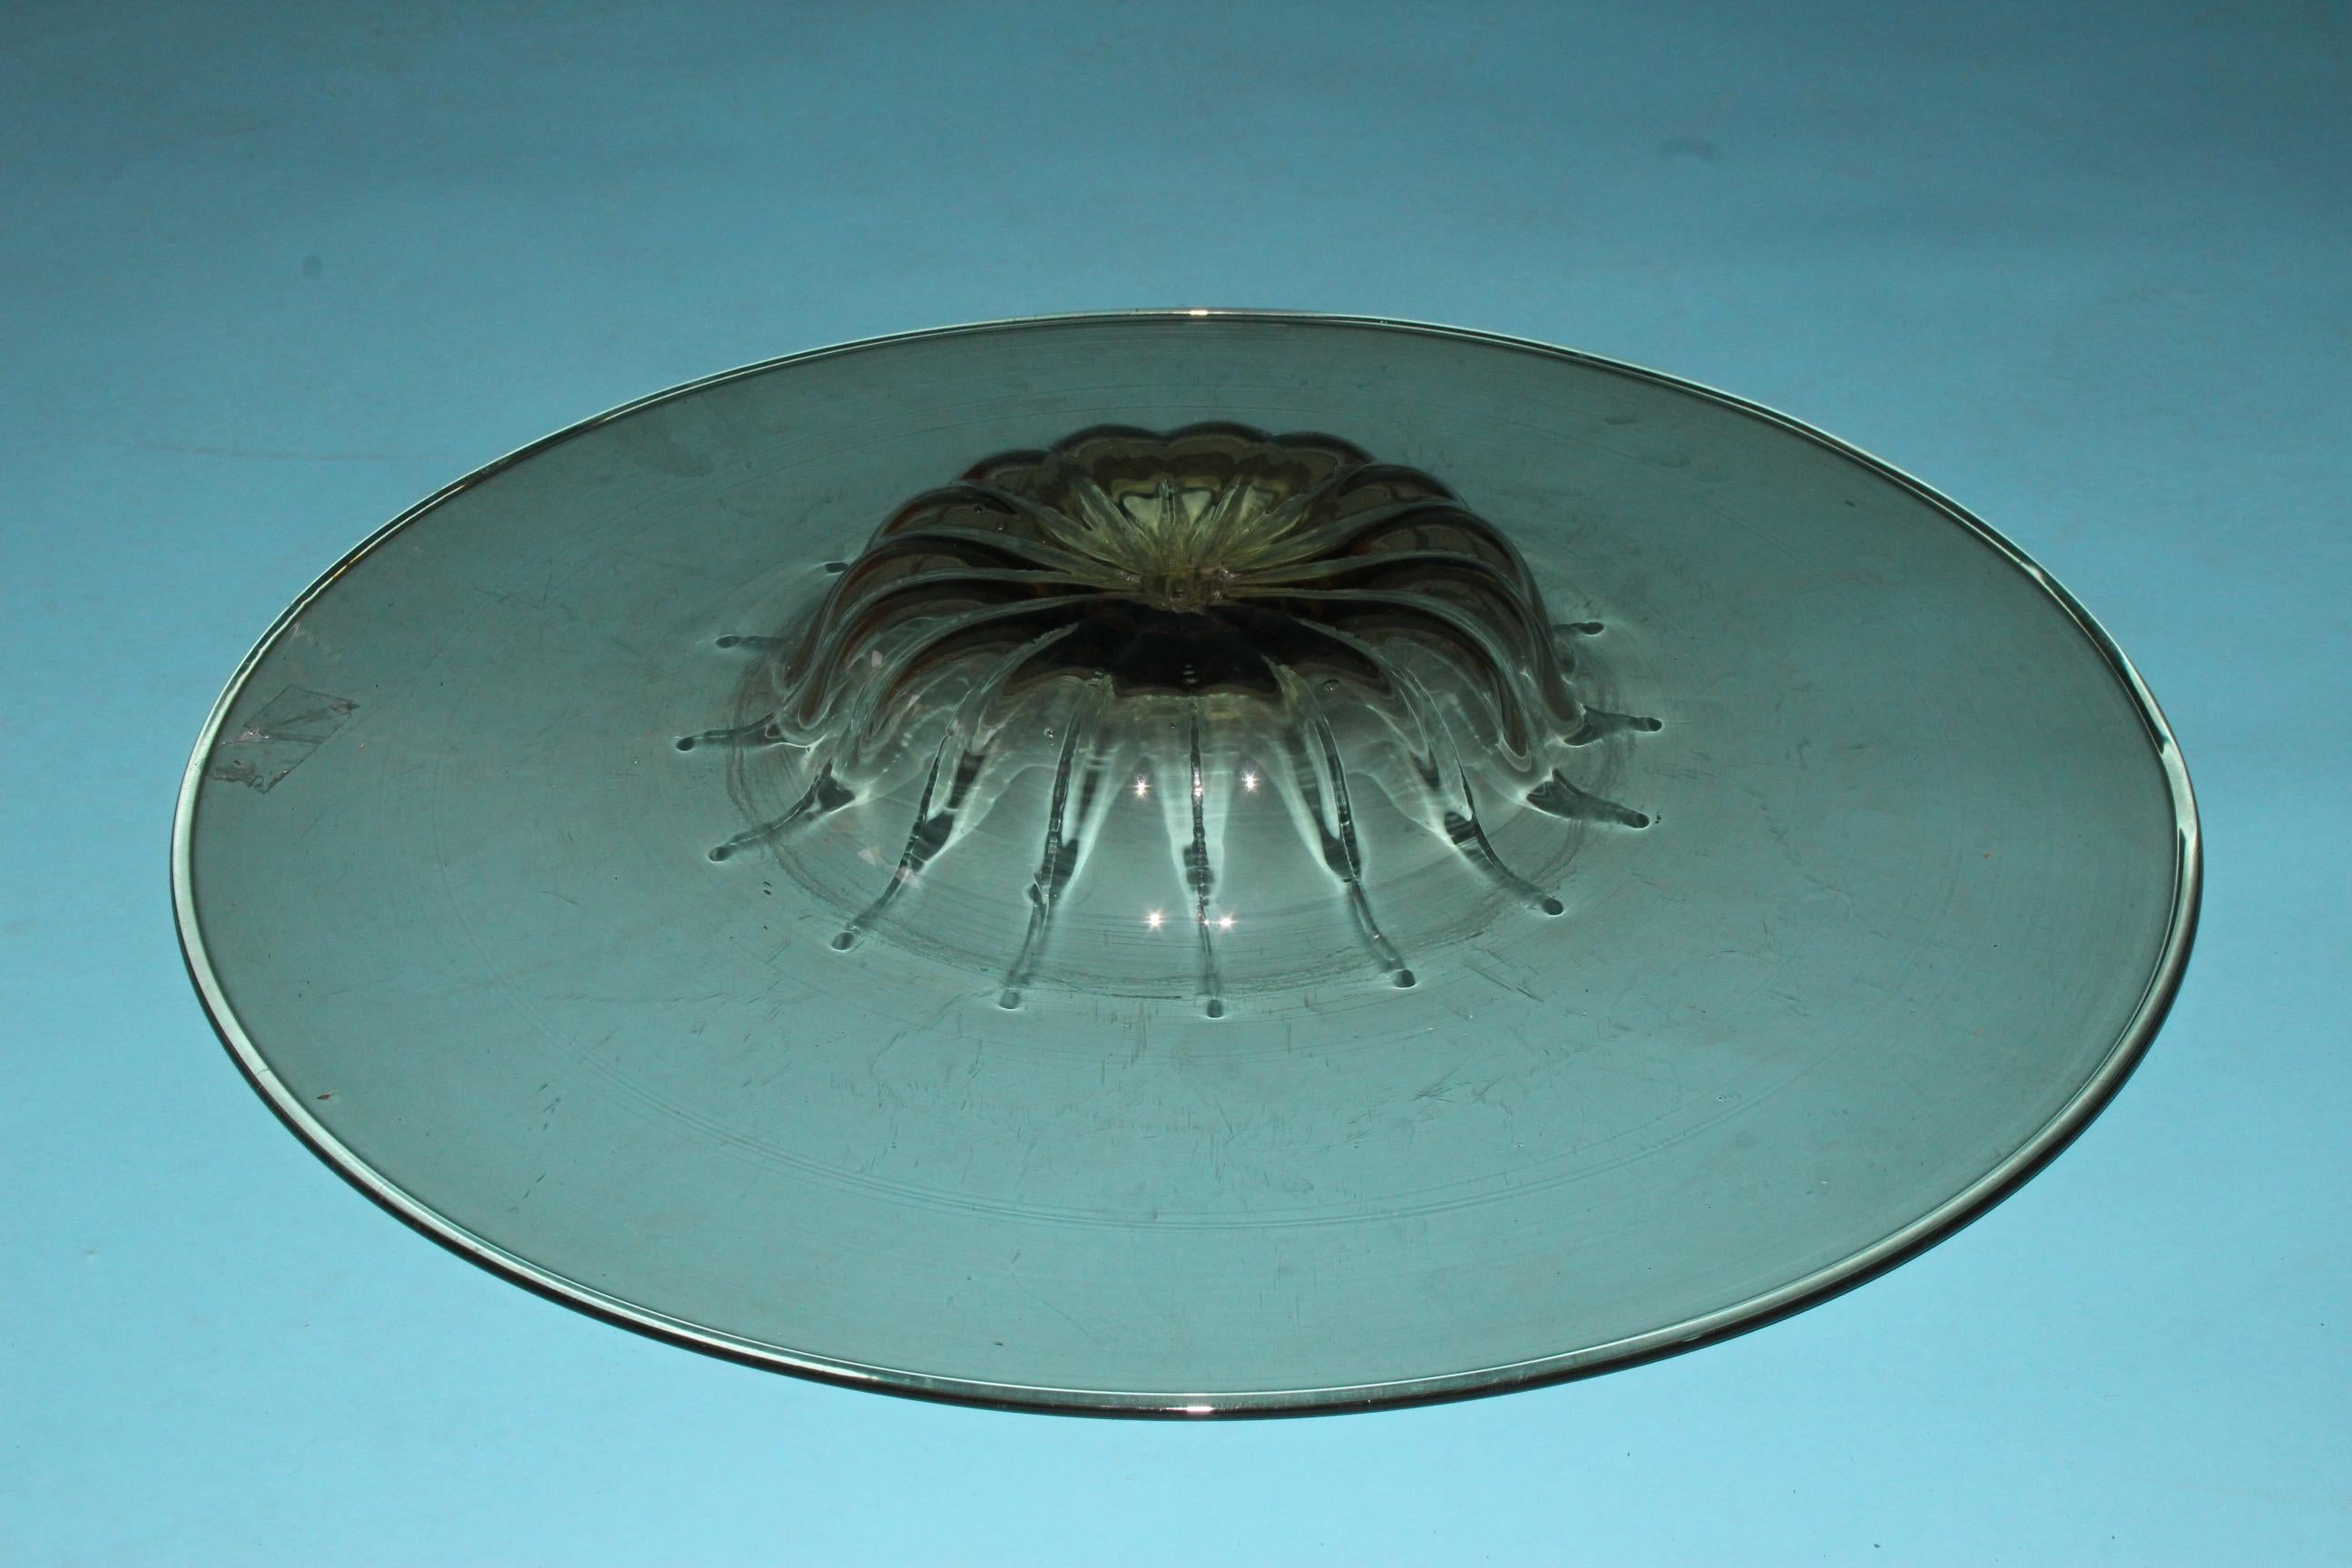 Italian Vetro Soffiato Glass Plate by Vittorio Zecchin for Venini Murano, circa 1925